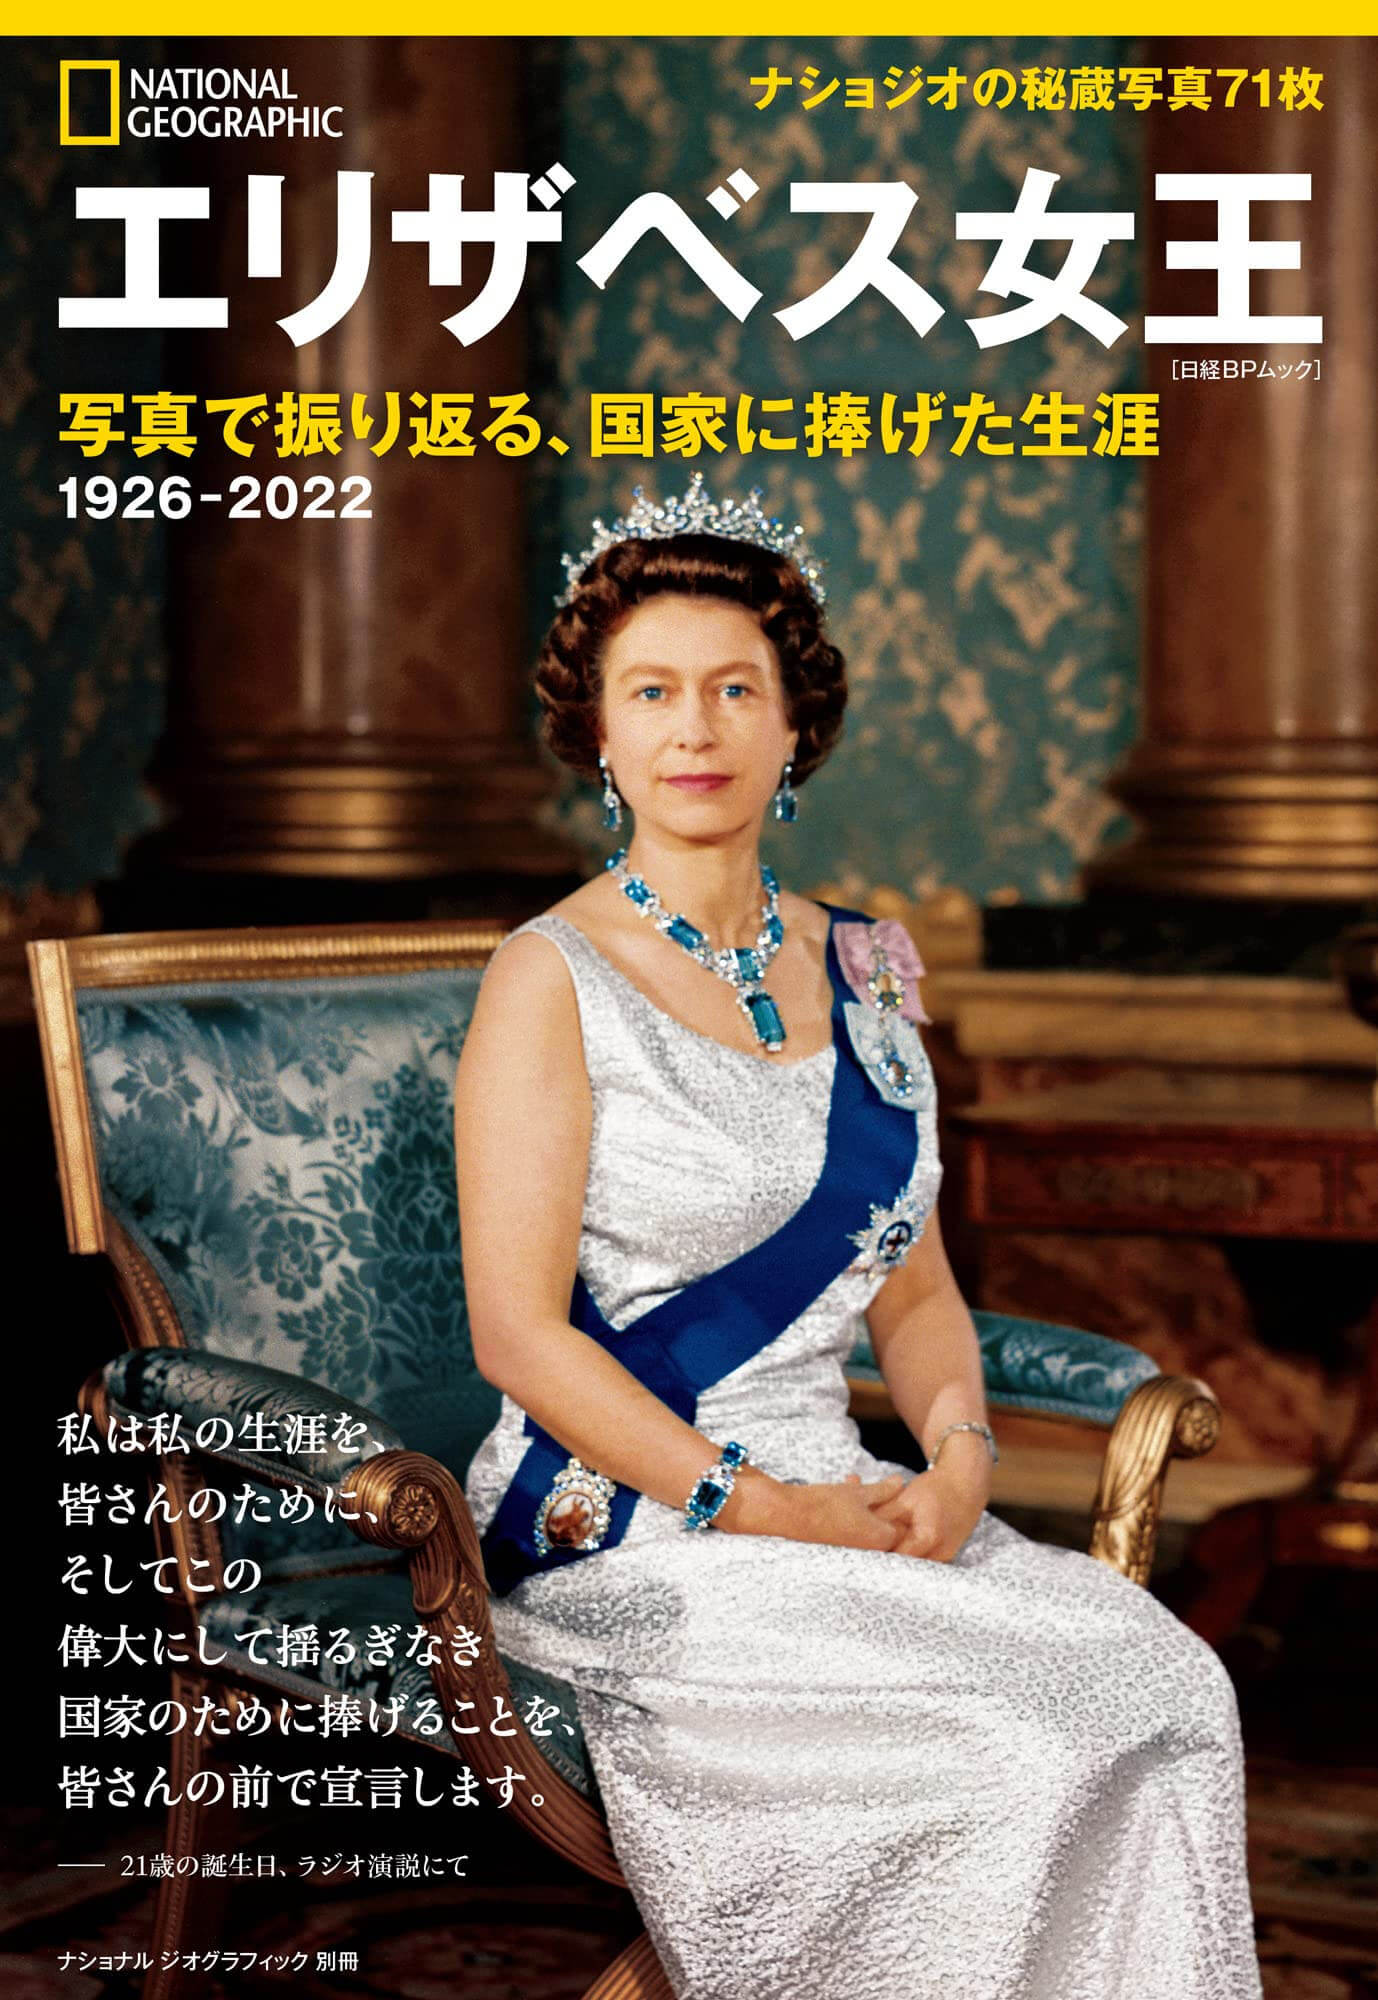 『エリザベス女王 写真で振り返る、国家に捧げた生涯』